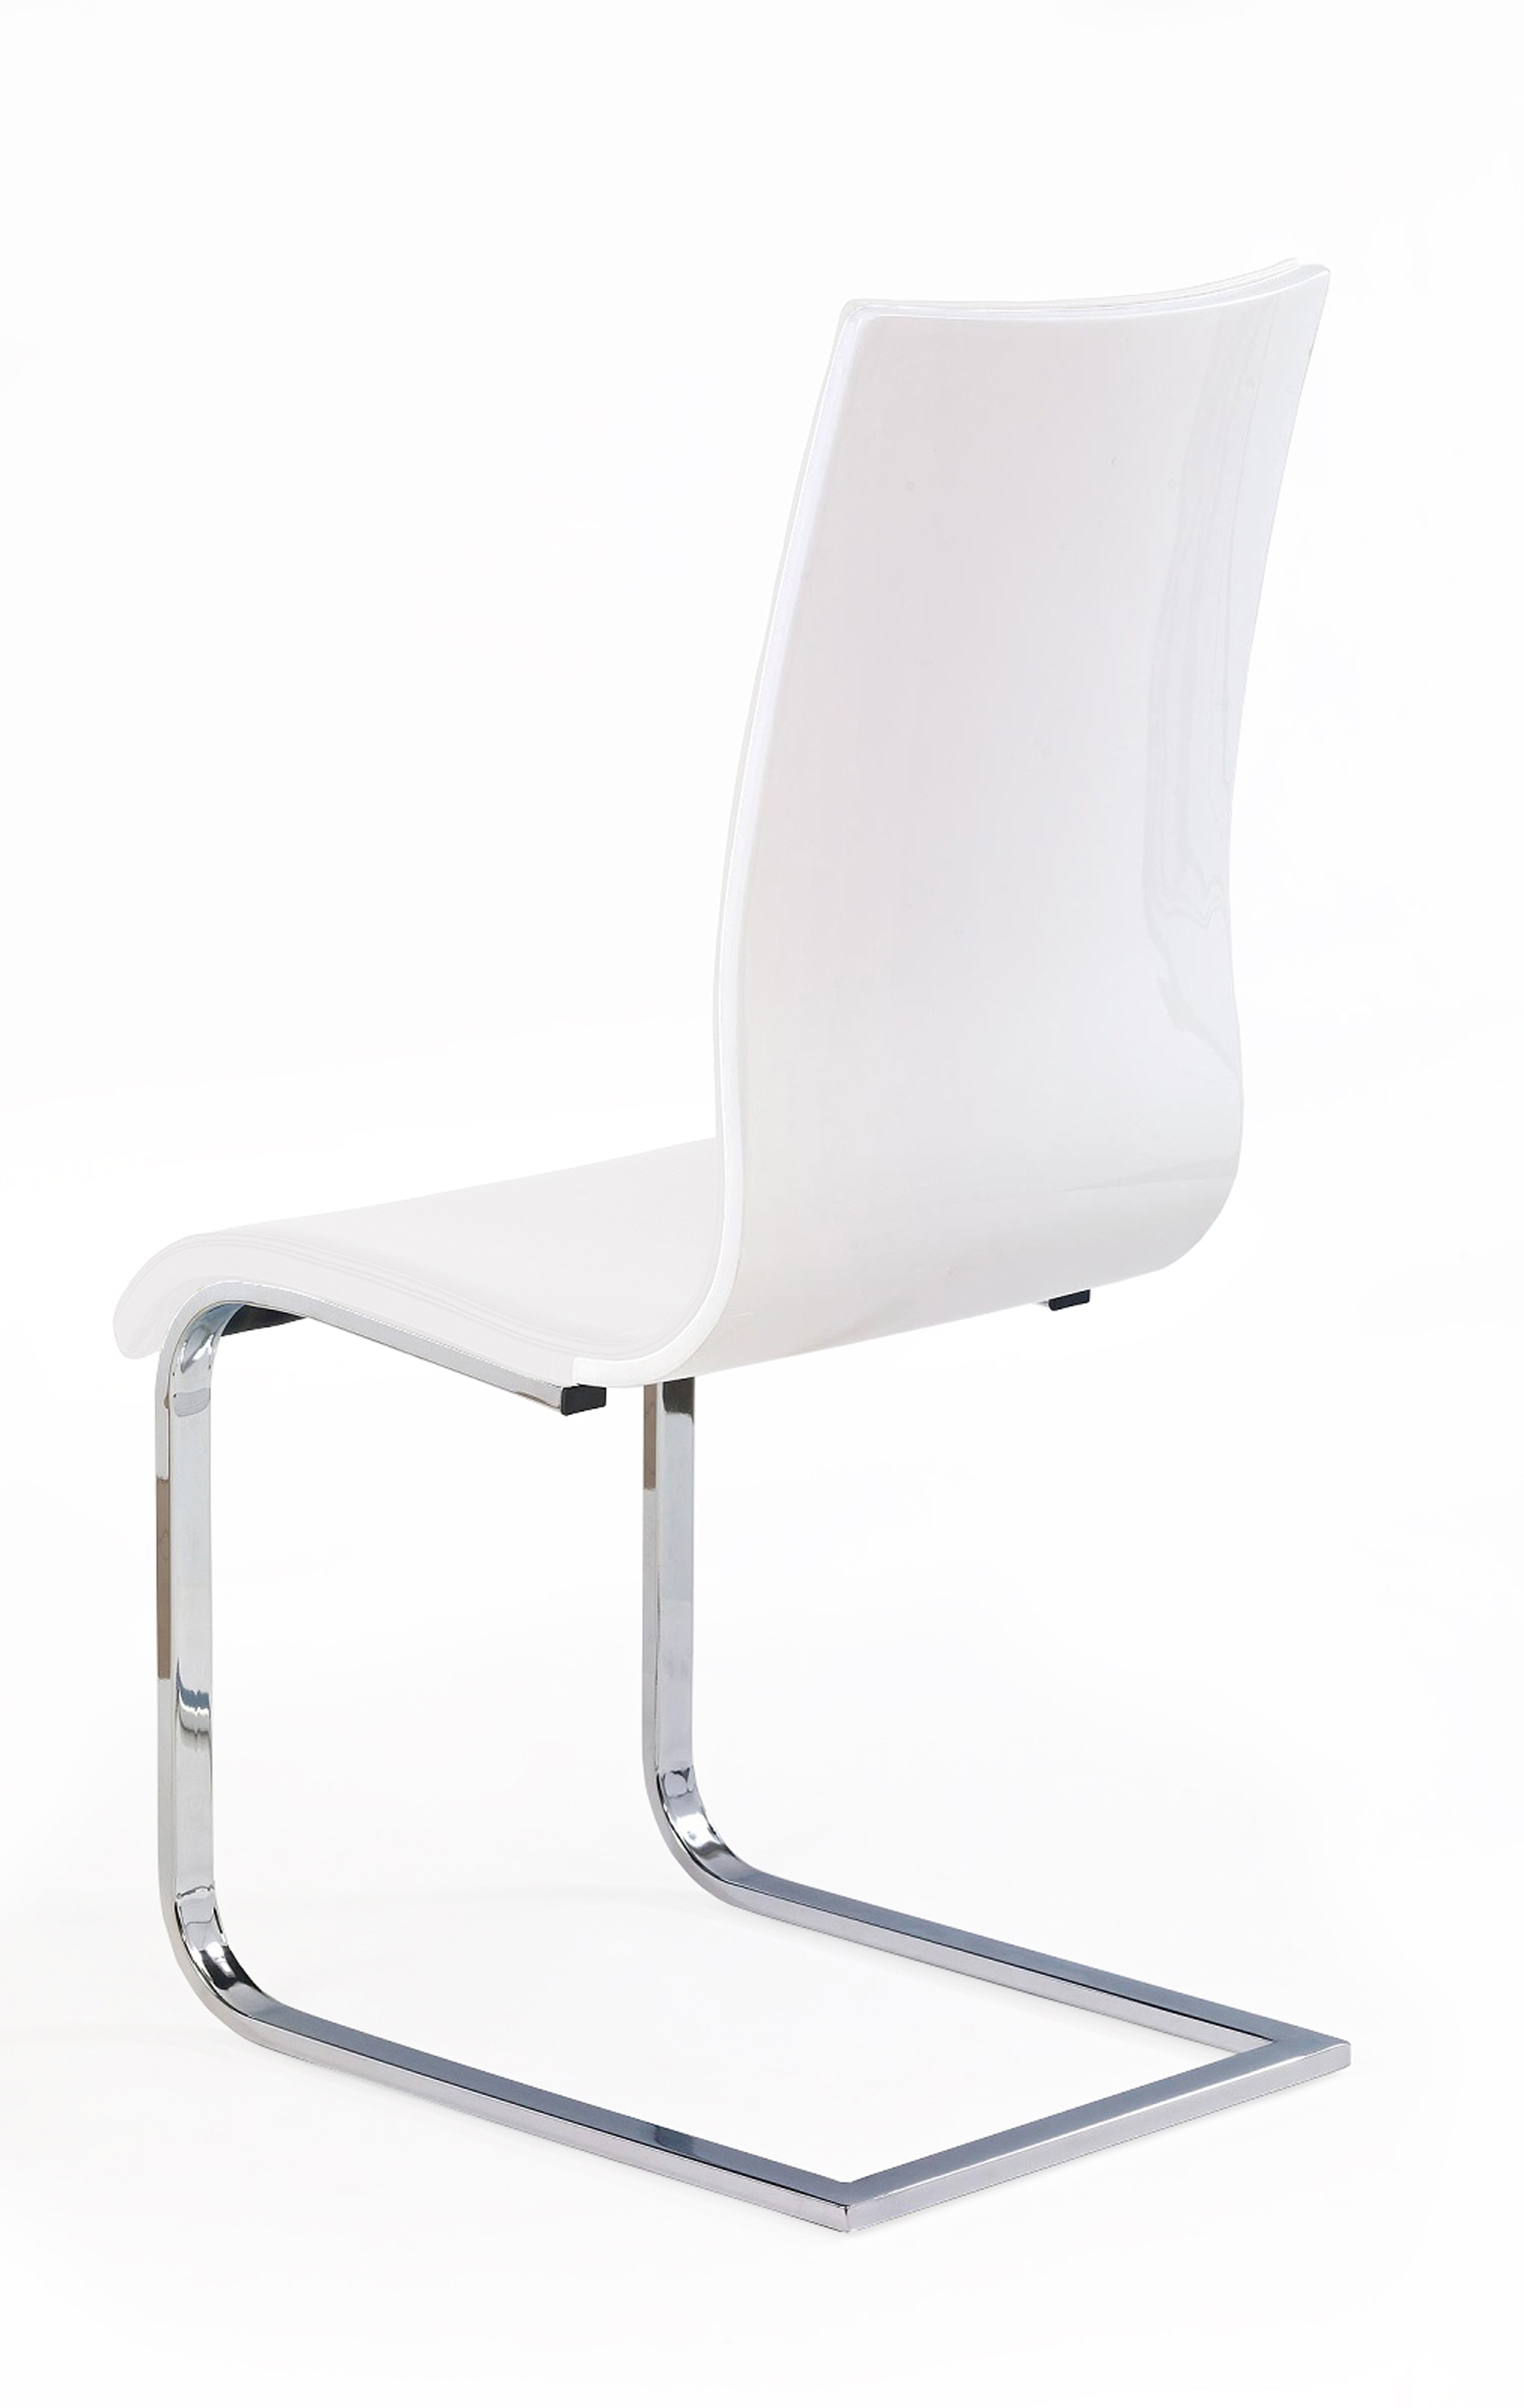 Židle K104 - bílá Židle k104 - biale